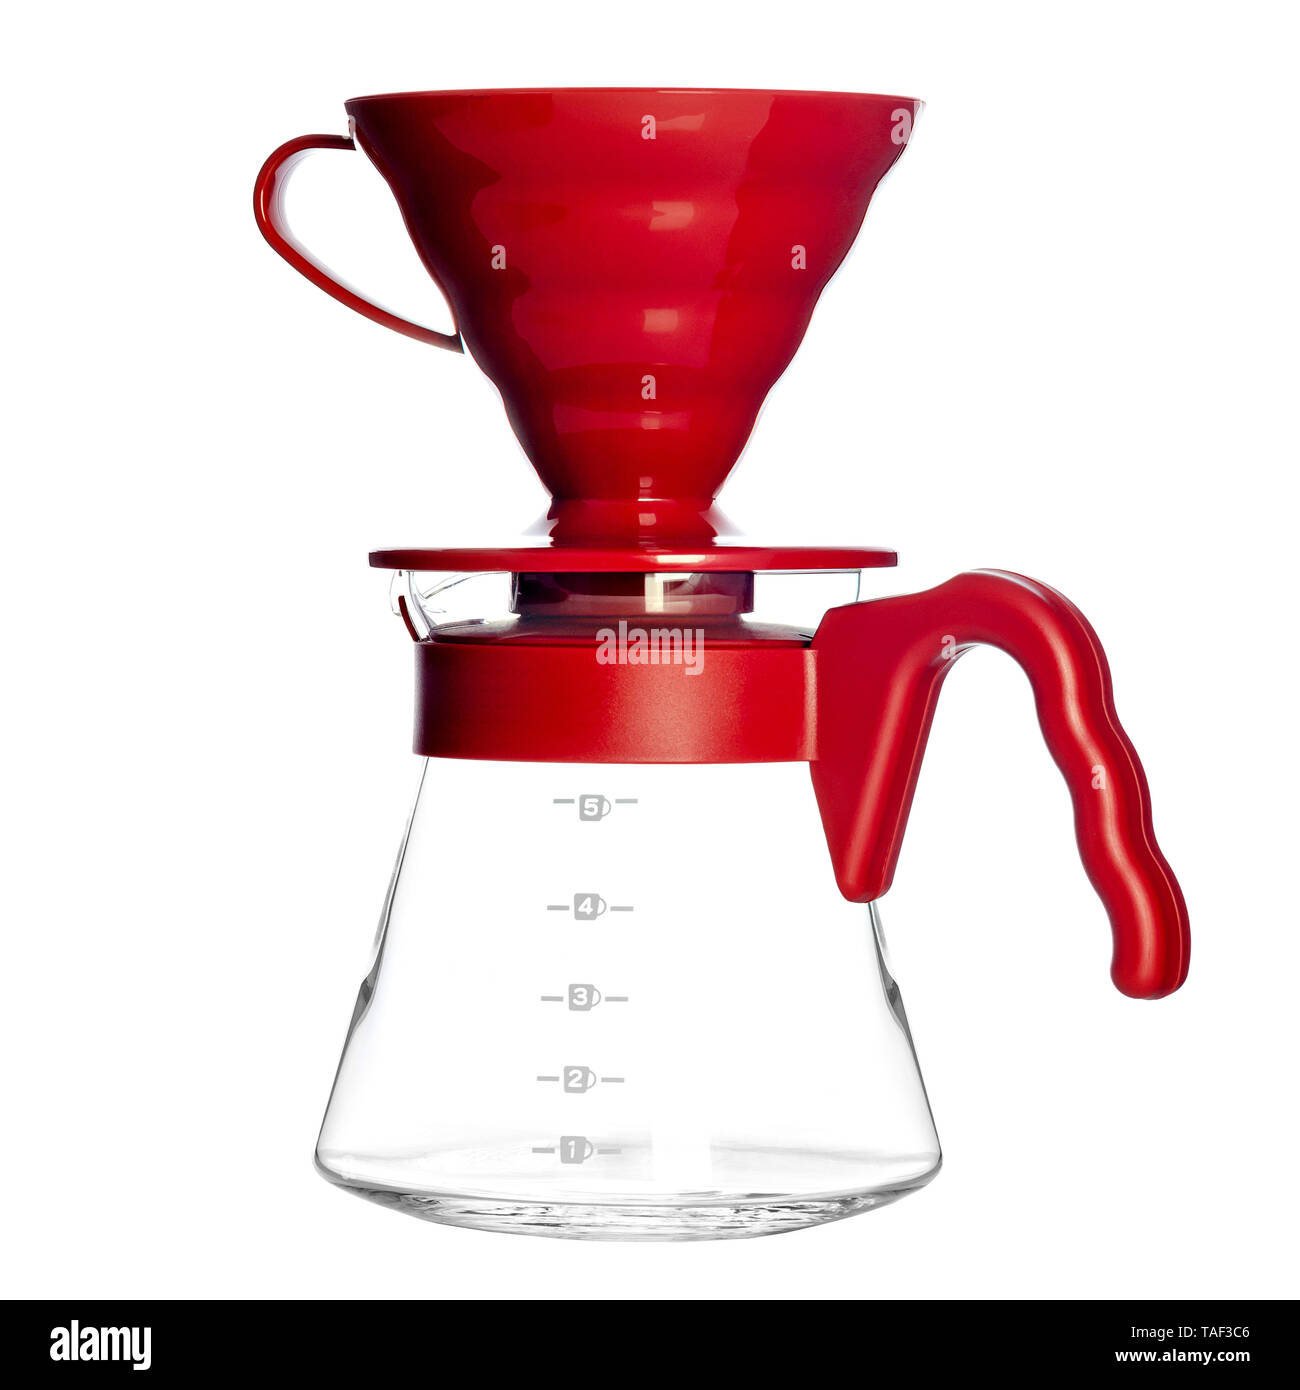 Fontaine - La cafetera V60, este método lento consistente en preparar café  vertiendo agua caliente permite extraer los sabores sutiles y complejos de  los granos del café.🤗☕.⁠ ⁠ Práctico y sencillo kit